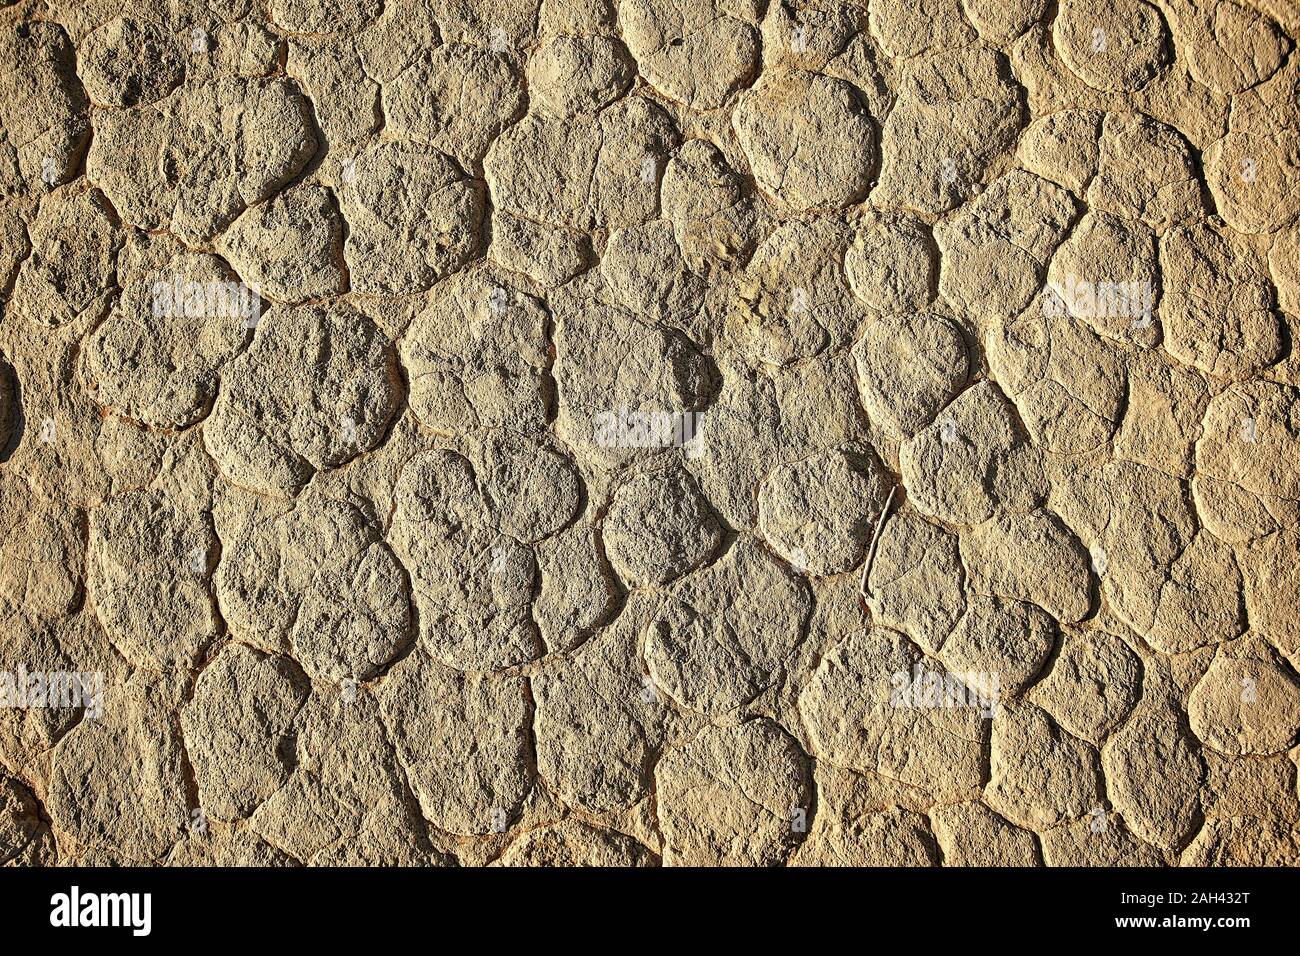 Close-up of the salt flat in Deadvlei, Sossusvlei, Namib desert, Namibia Stock Photo